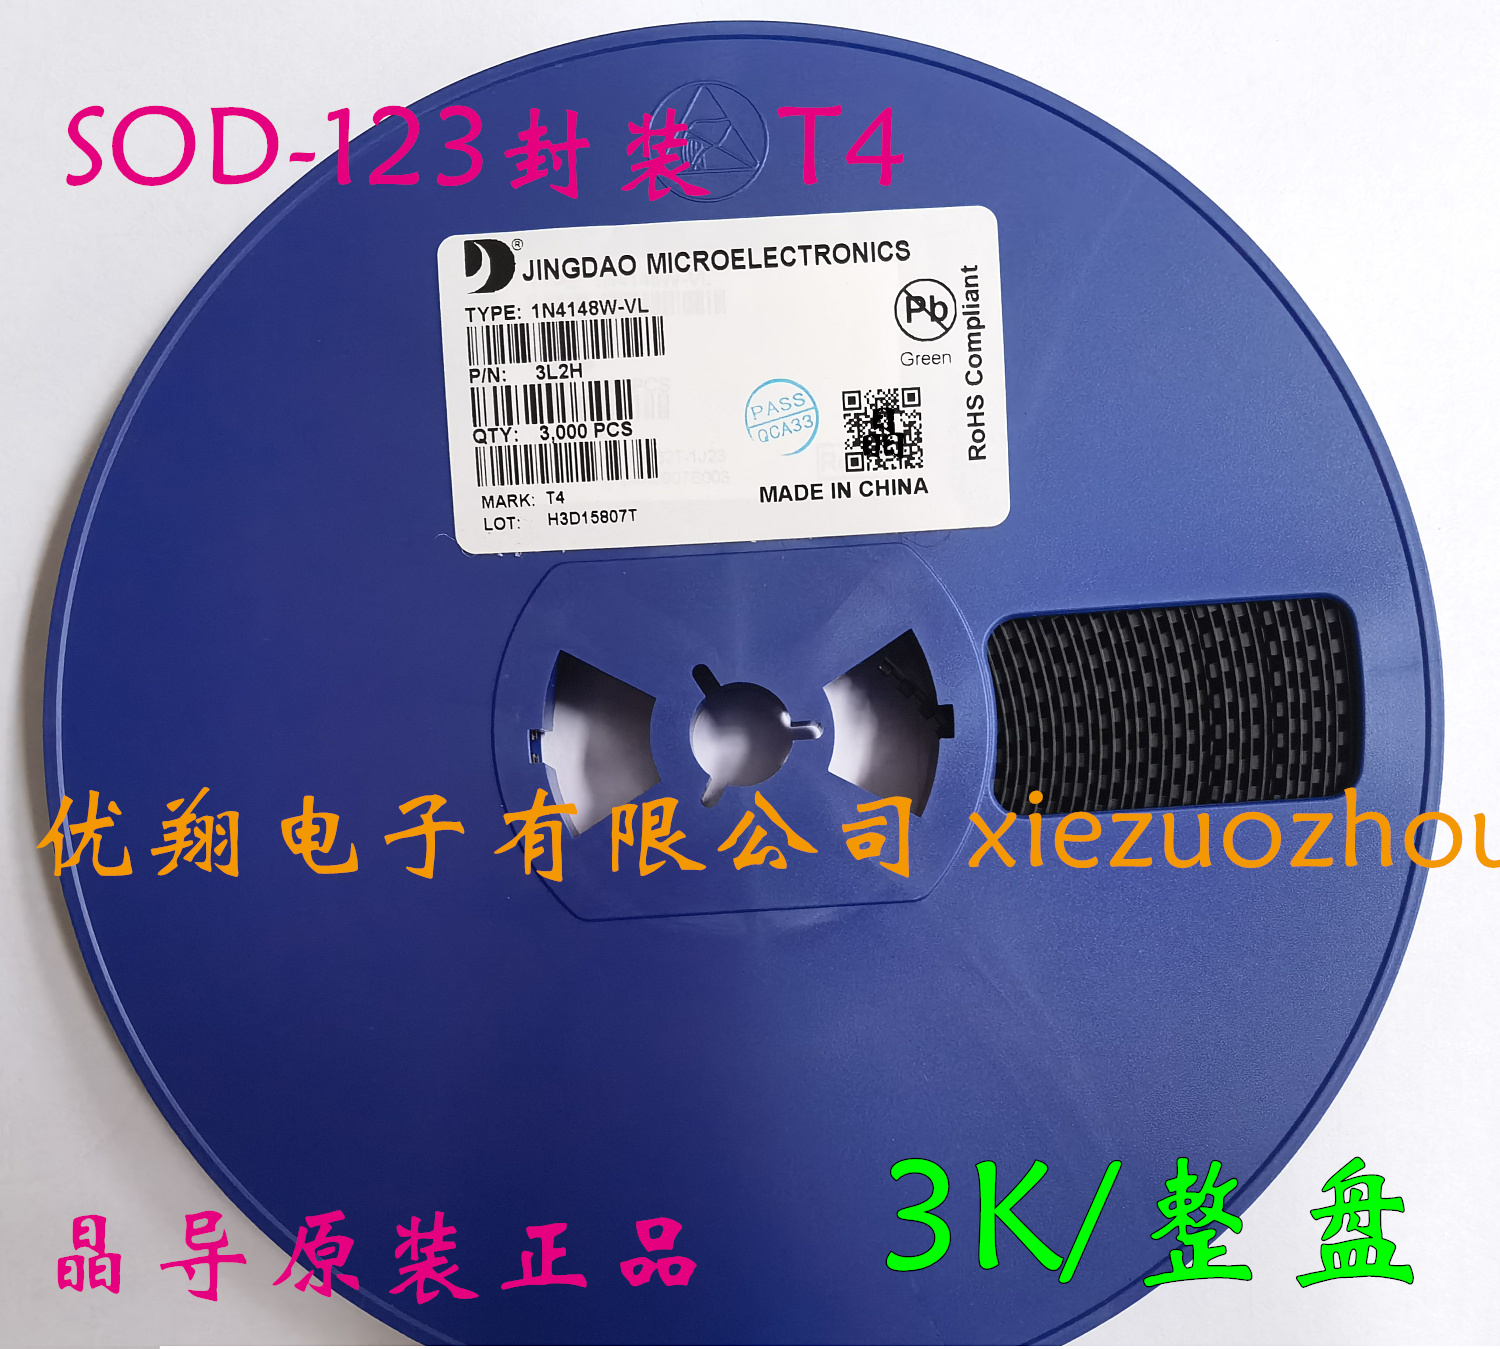 晶导微 贴片二极管1N4148w T4 SOD-123 1206封装 (3千/盘=45元) 电子元器件市场 二极管 原图主图